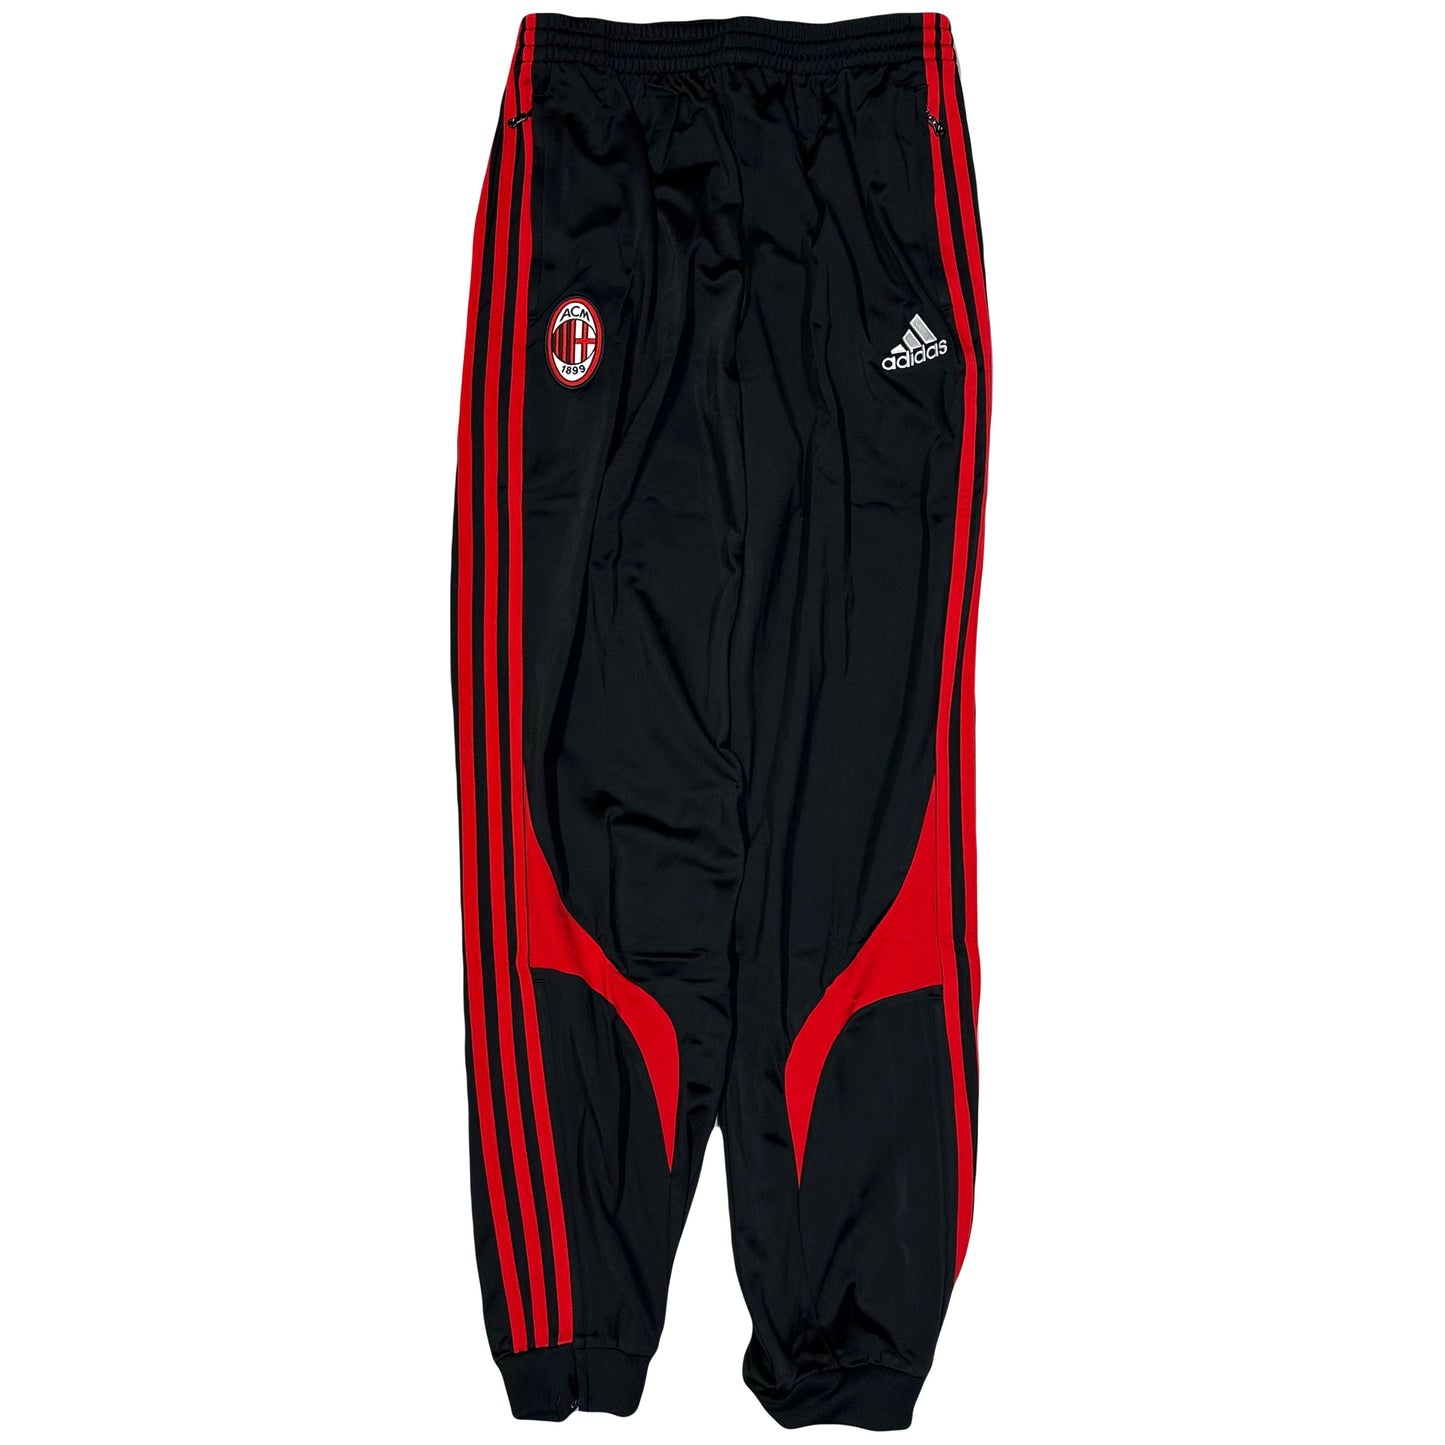 Adidas AC Milan 2006/07 Tracksuit In Black & Red ( M )